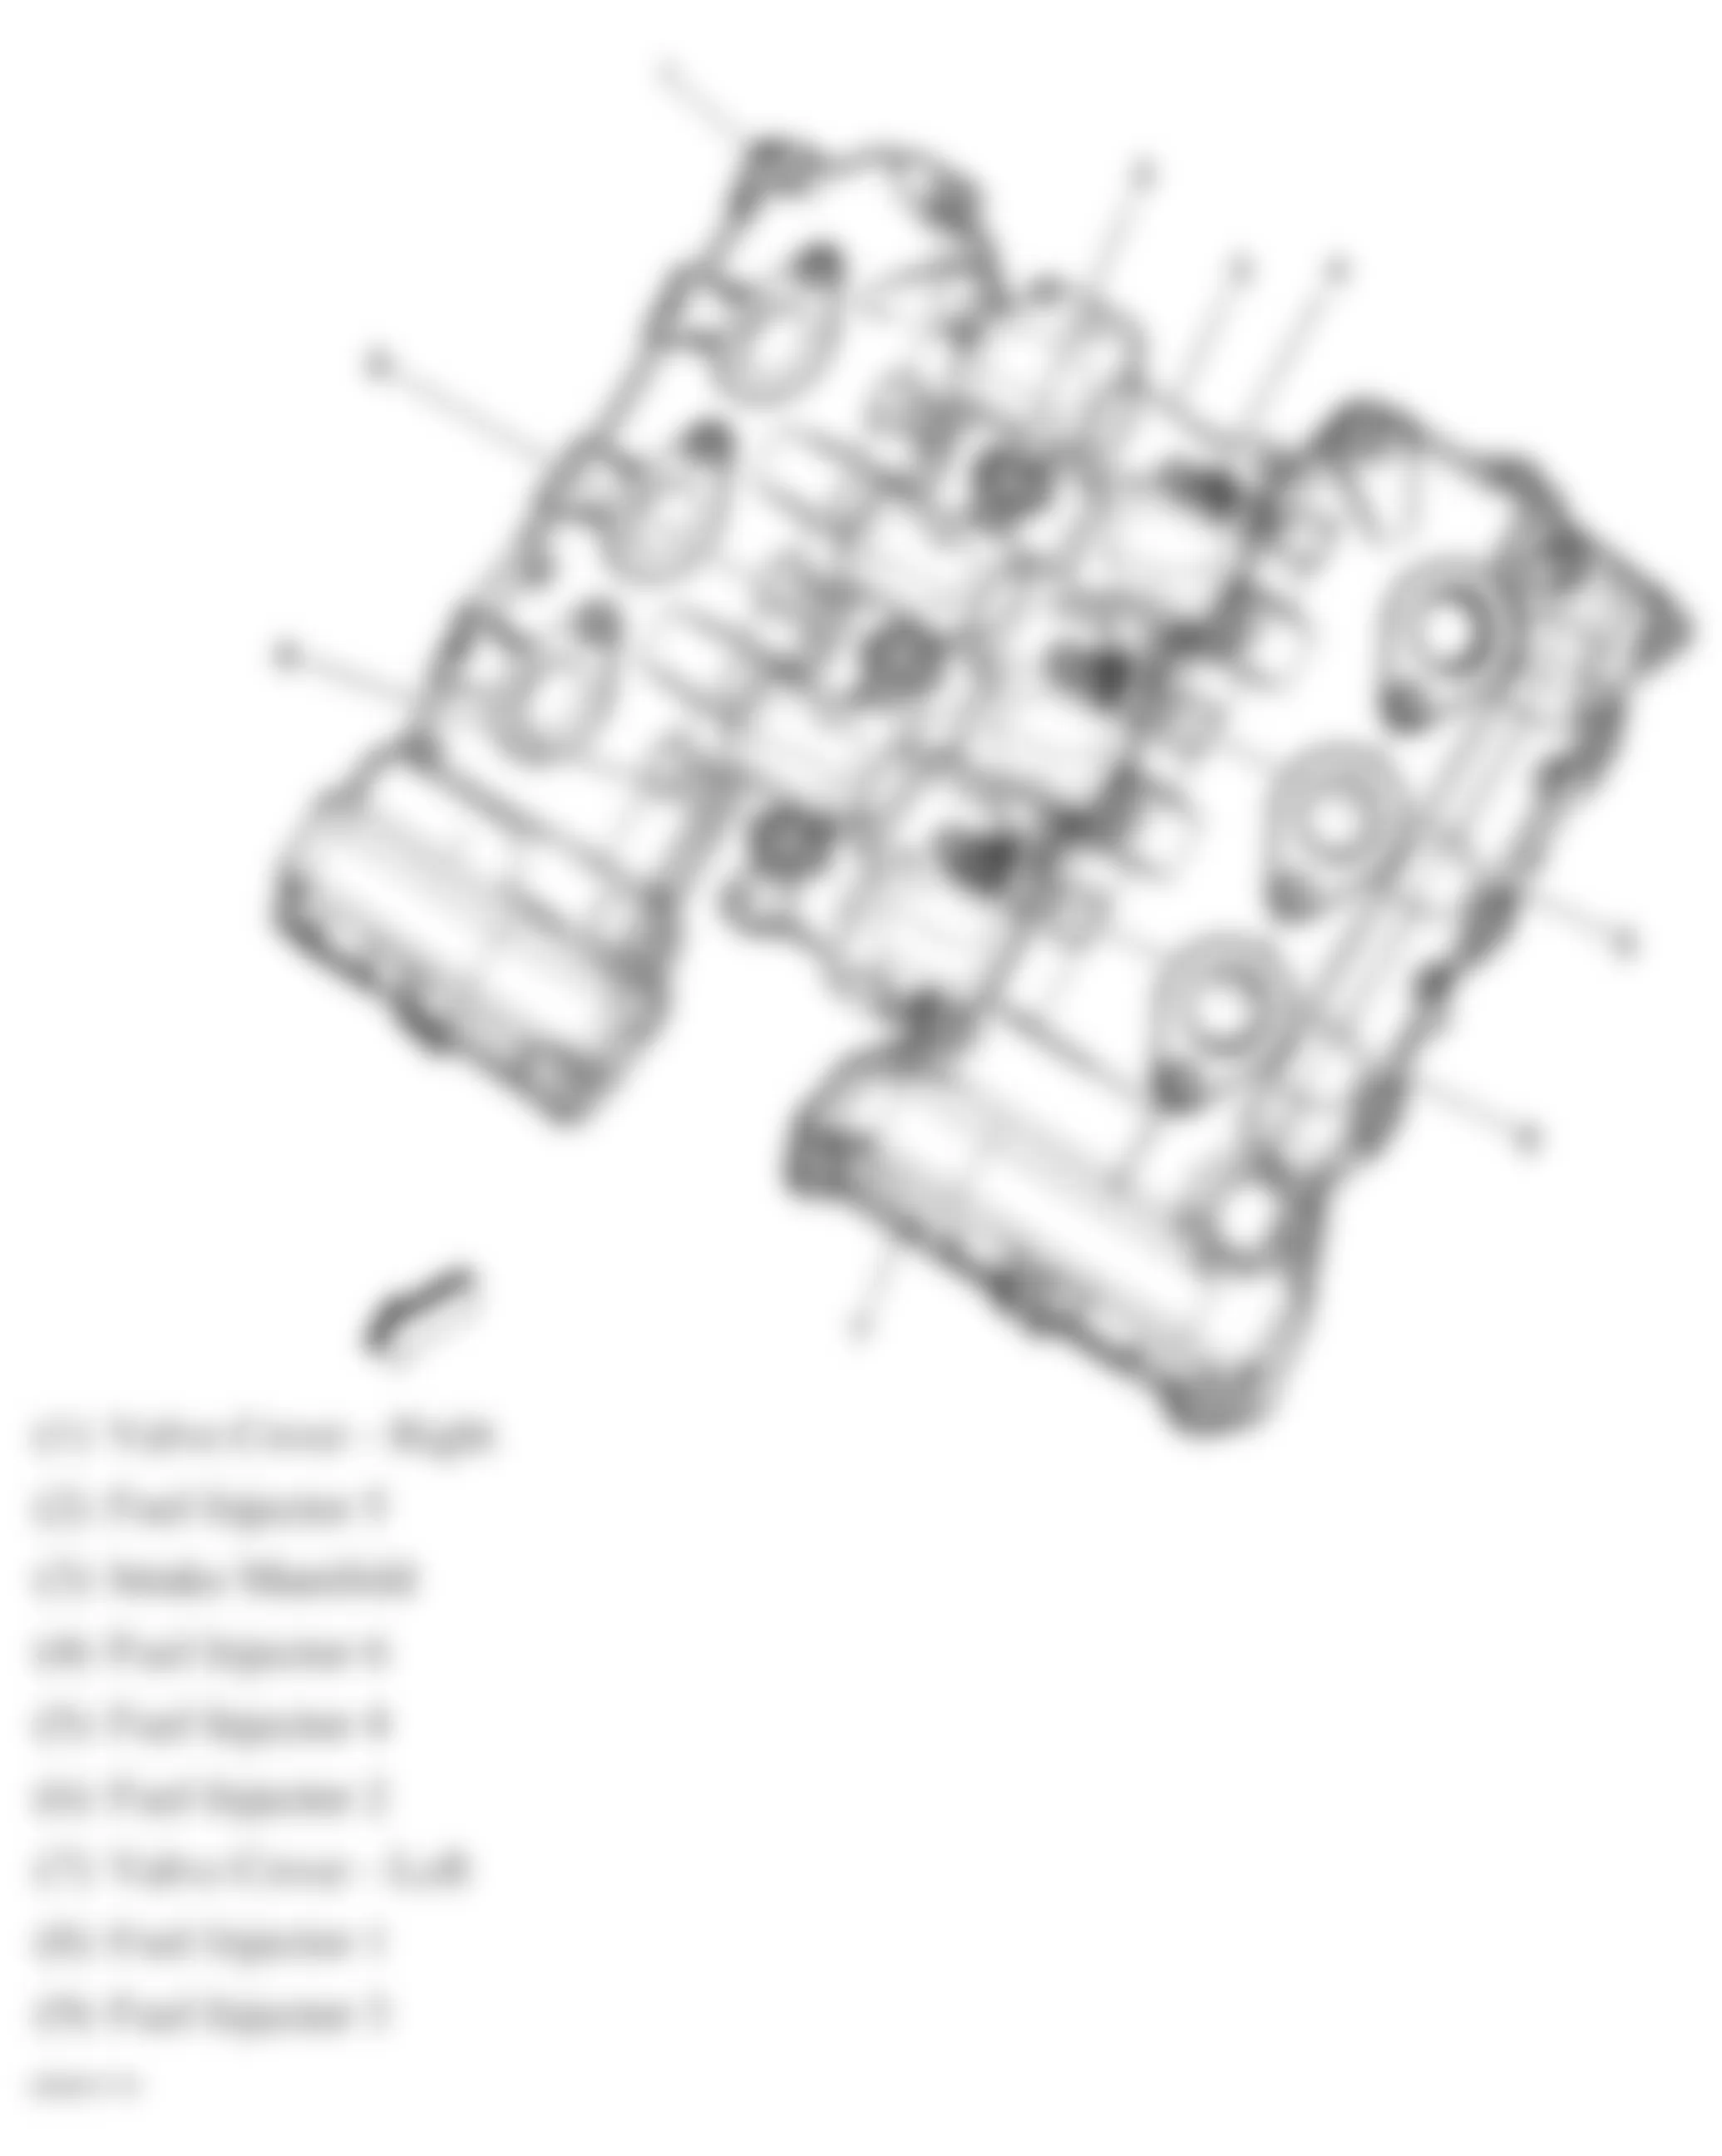 Buick Allure CXL 2008 - Component Locations -  Fuel Injectors